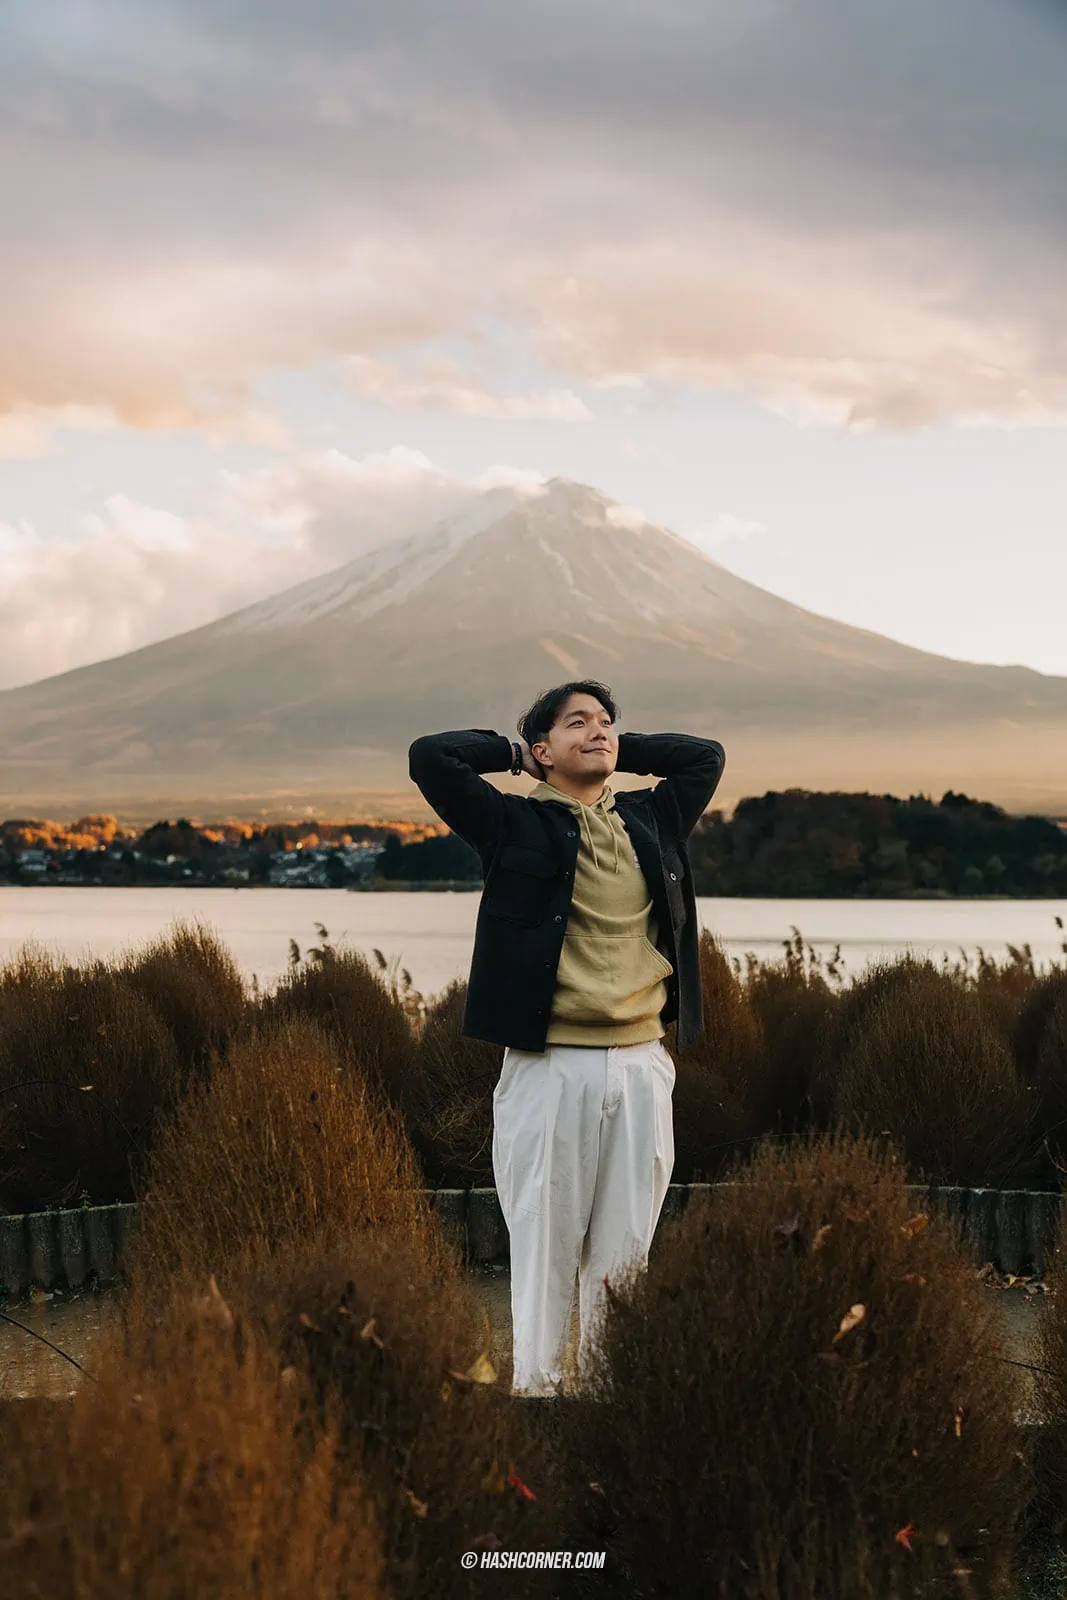 Kawaguchiko Travel Review: Chasing the Mount Fuji